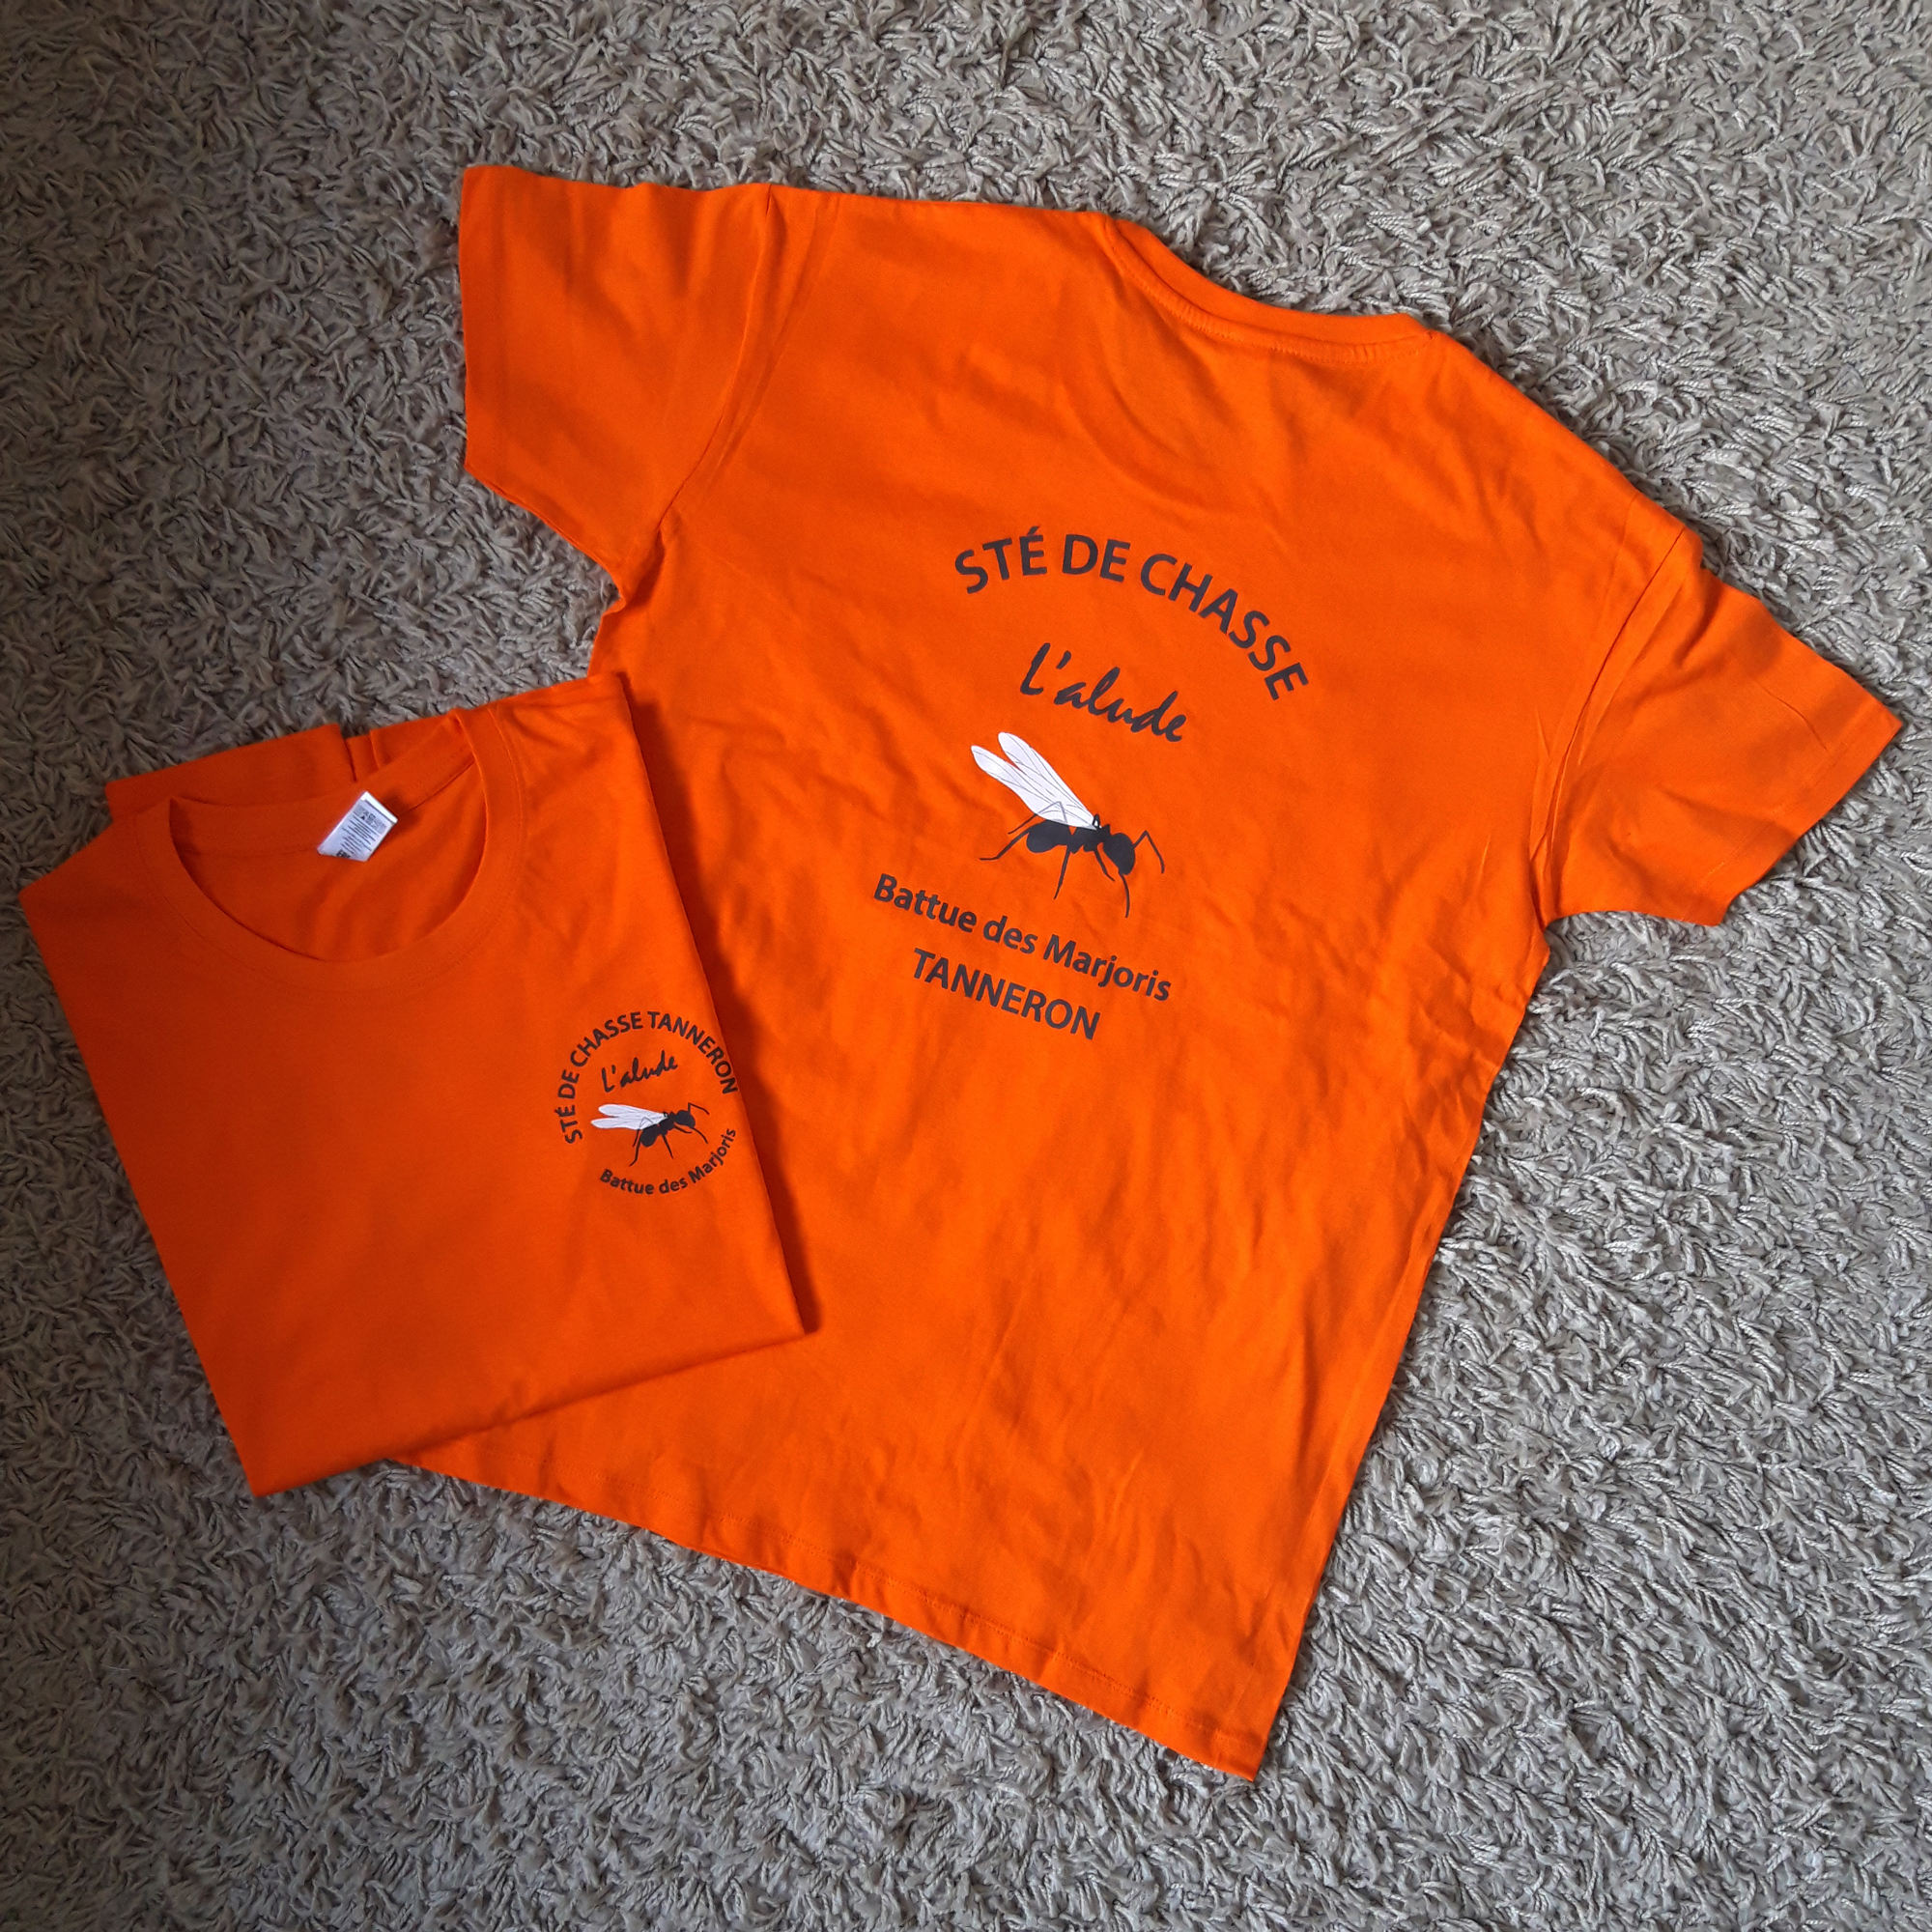 Tshirts personnalisés pour la société de chasse l'Alude à Tanneron